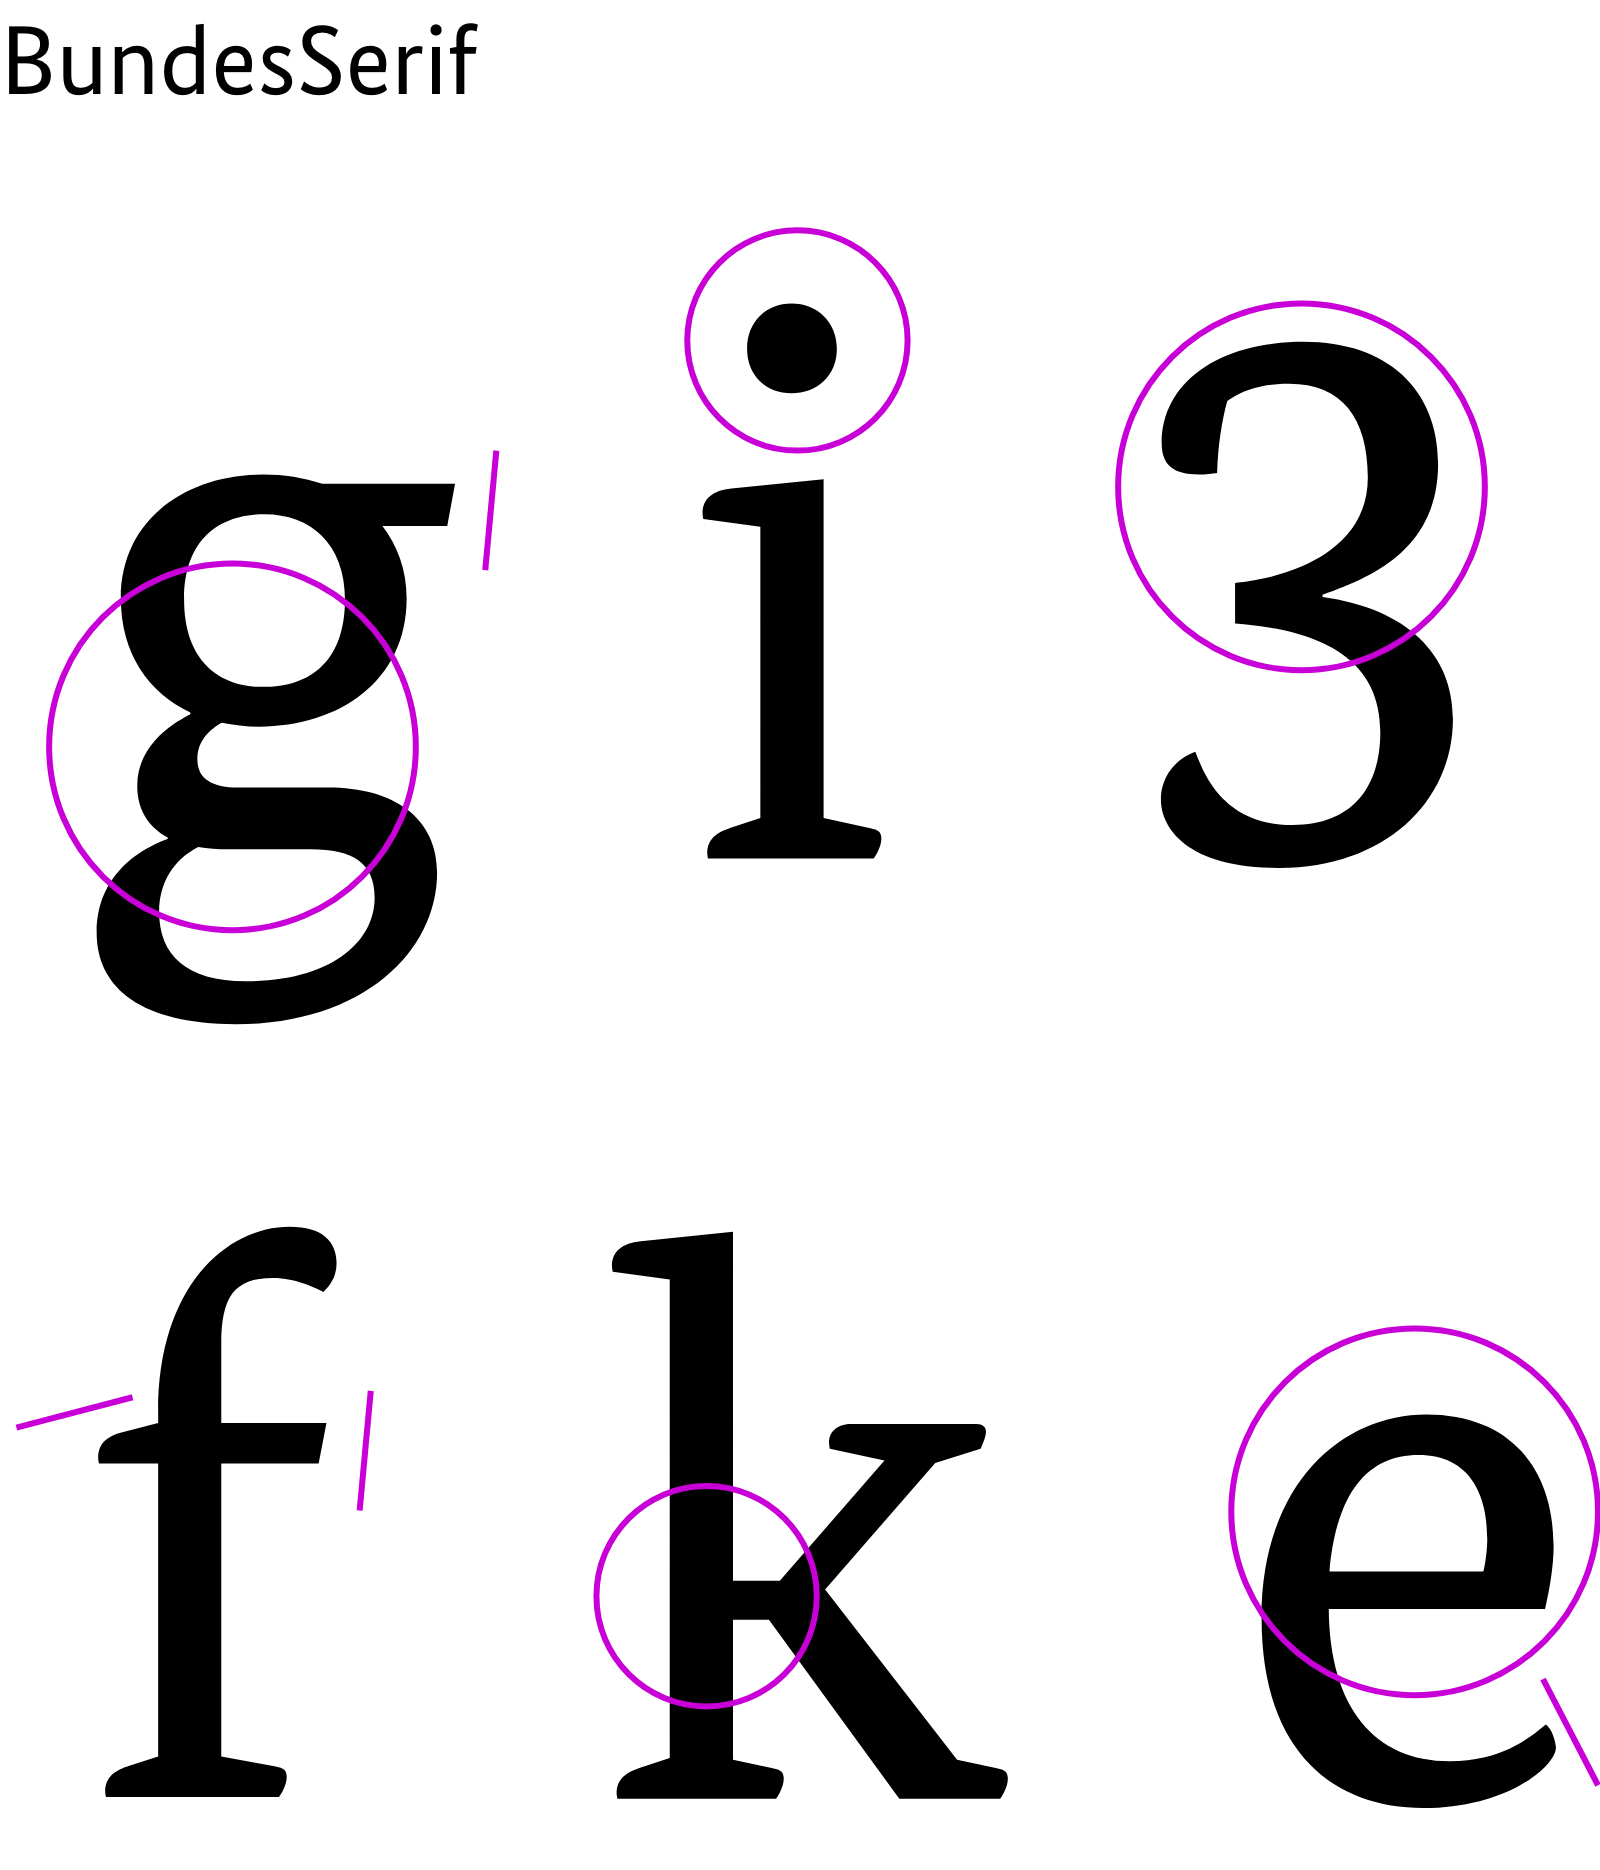 Beispielhafte Buchstaben der Schrift BundesSerif: g, i, 3, f,k, e mit Markierung der Bereiche, die sich von den Buchstaben der Arial unterscheiden